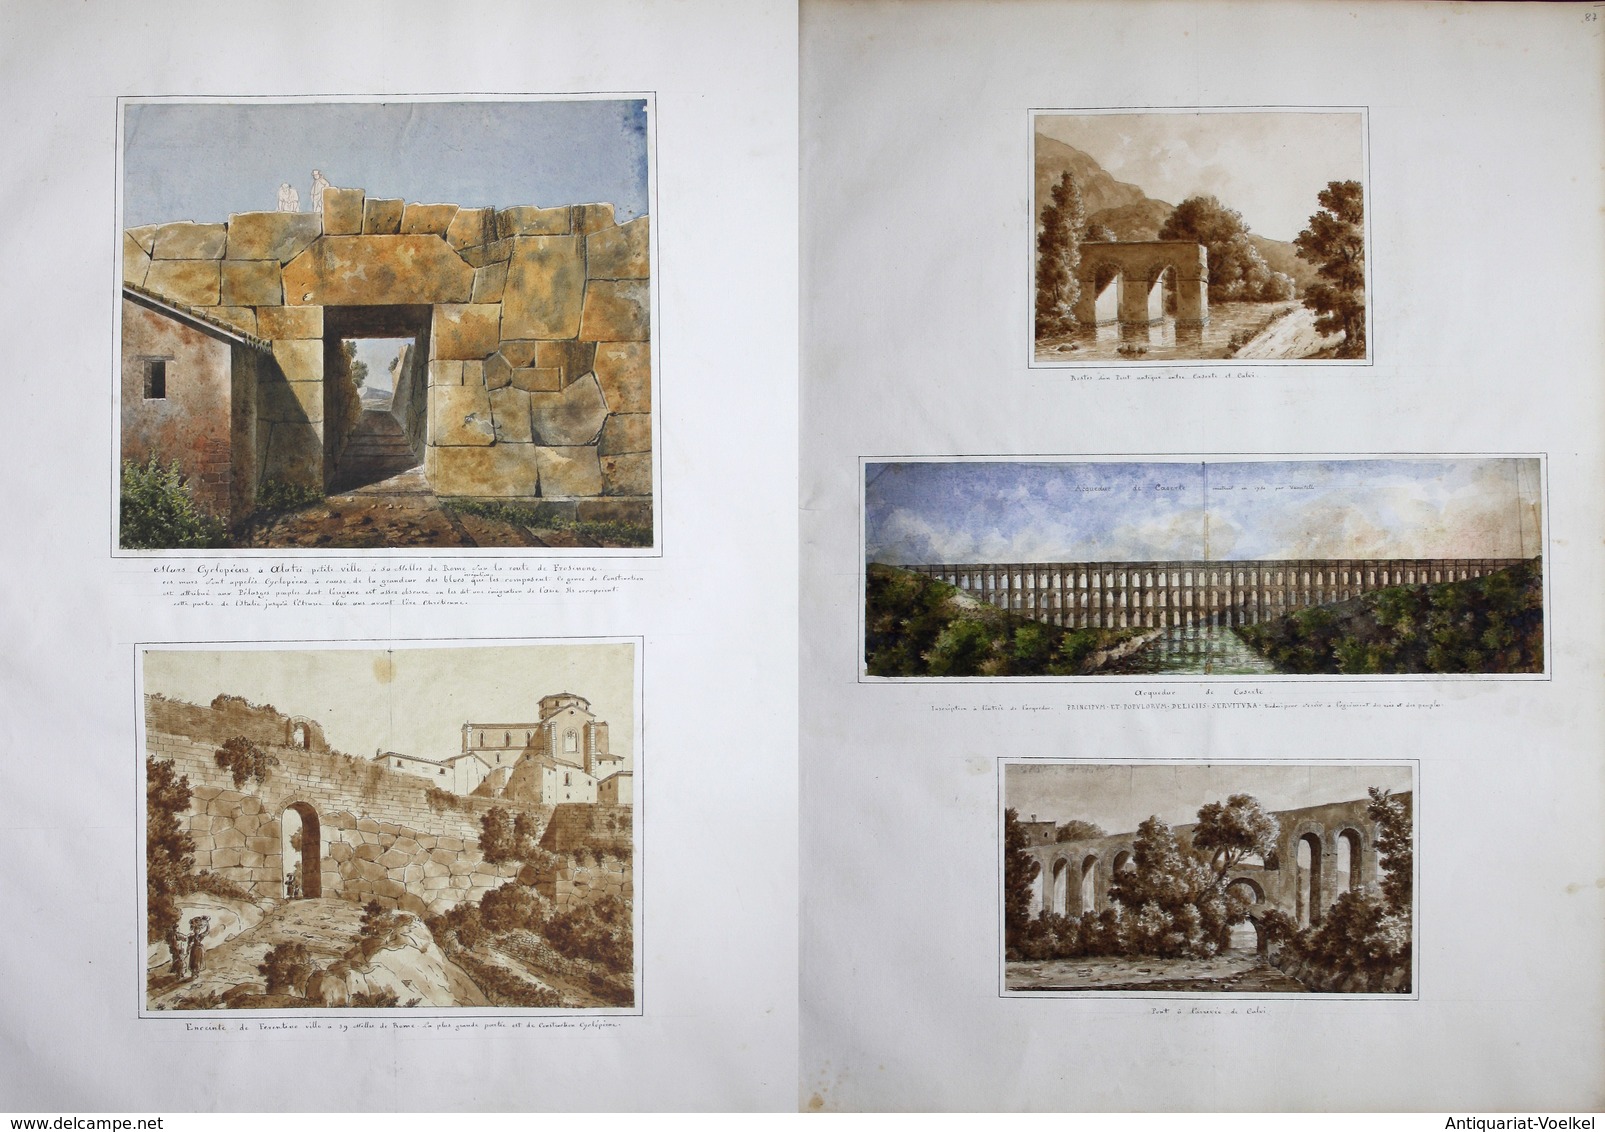 Mon Voyage de Rome à Naples fait en pied en 1821 en compagnie de Léopold Robert Peintre, Barbot, Benois, Thier